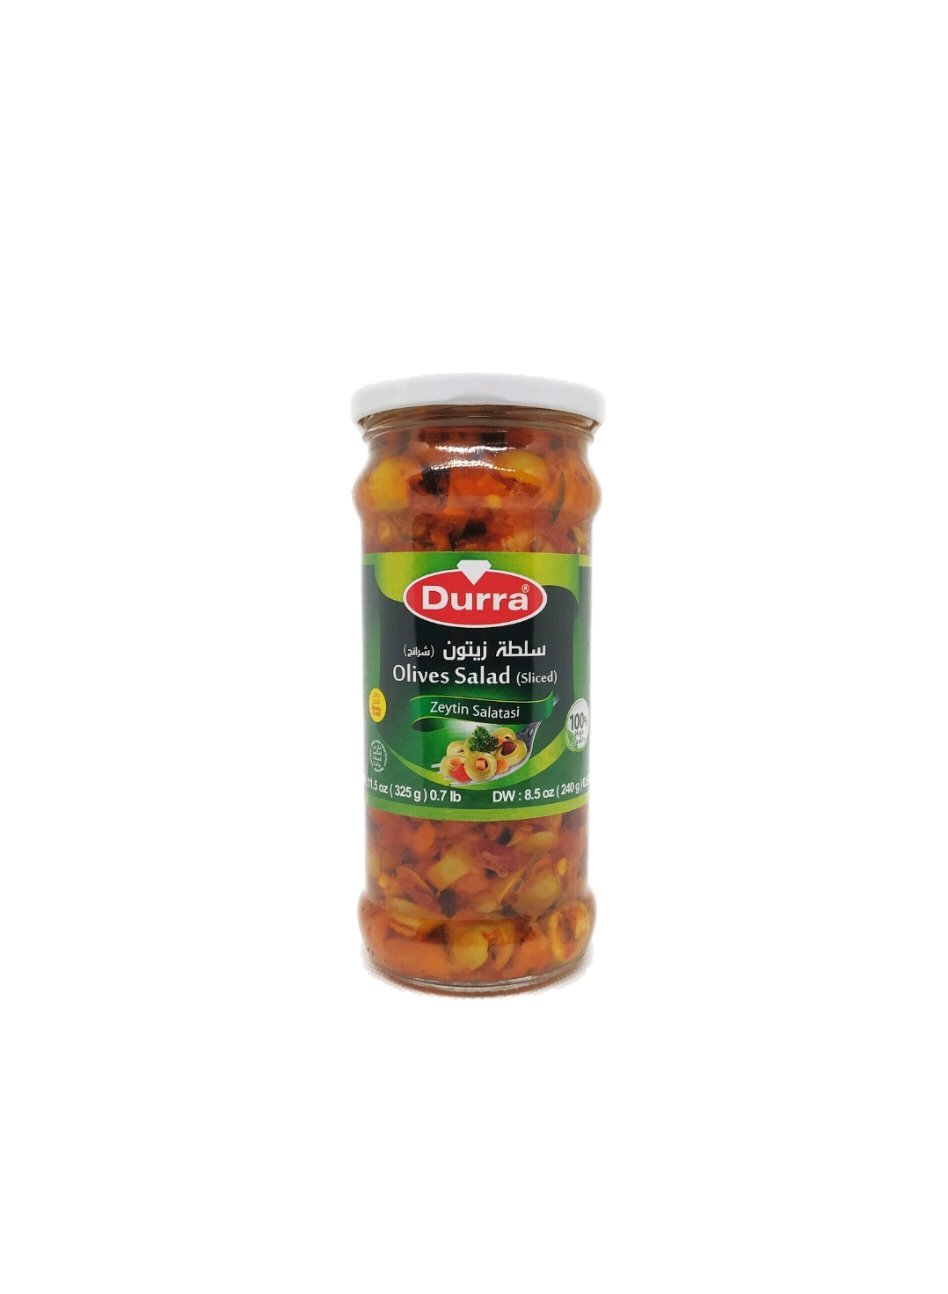 Produits orientaux en ligne : Durra - Olives pour salade